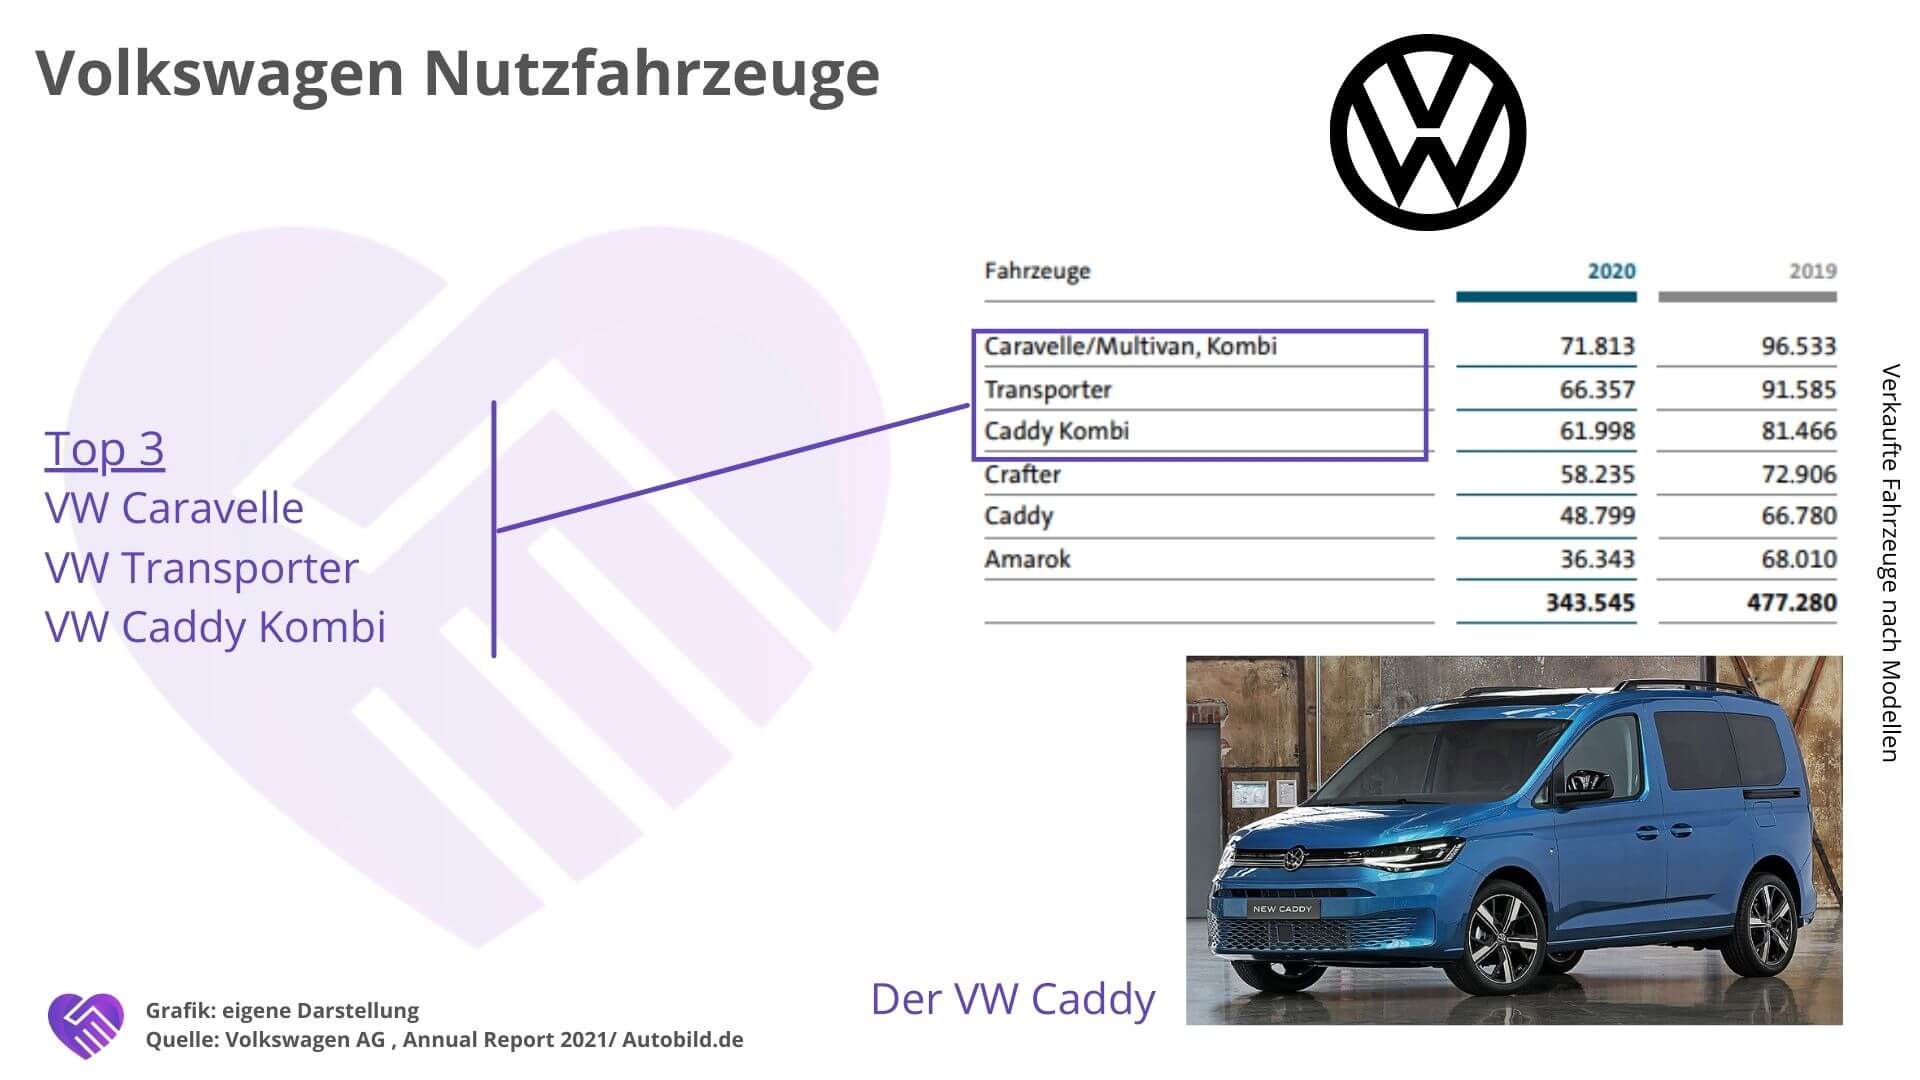 Volkswagen Aktie Analyse - Aufbruch ins neue Mobilzeitalter